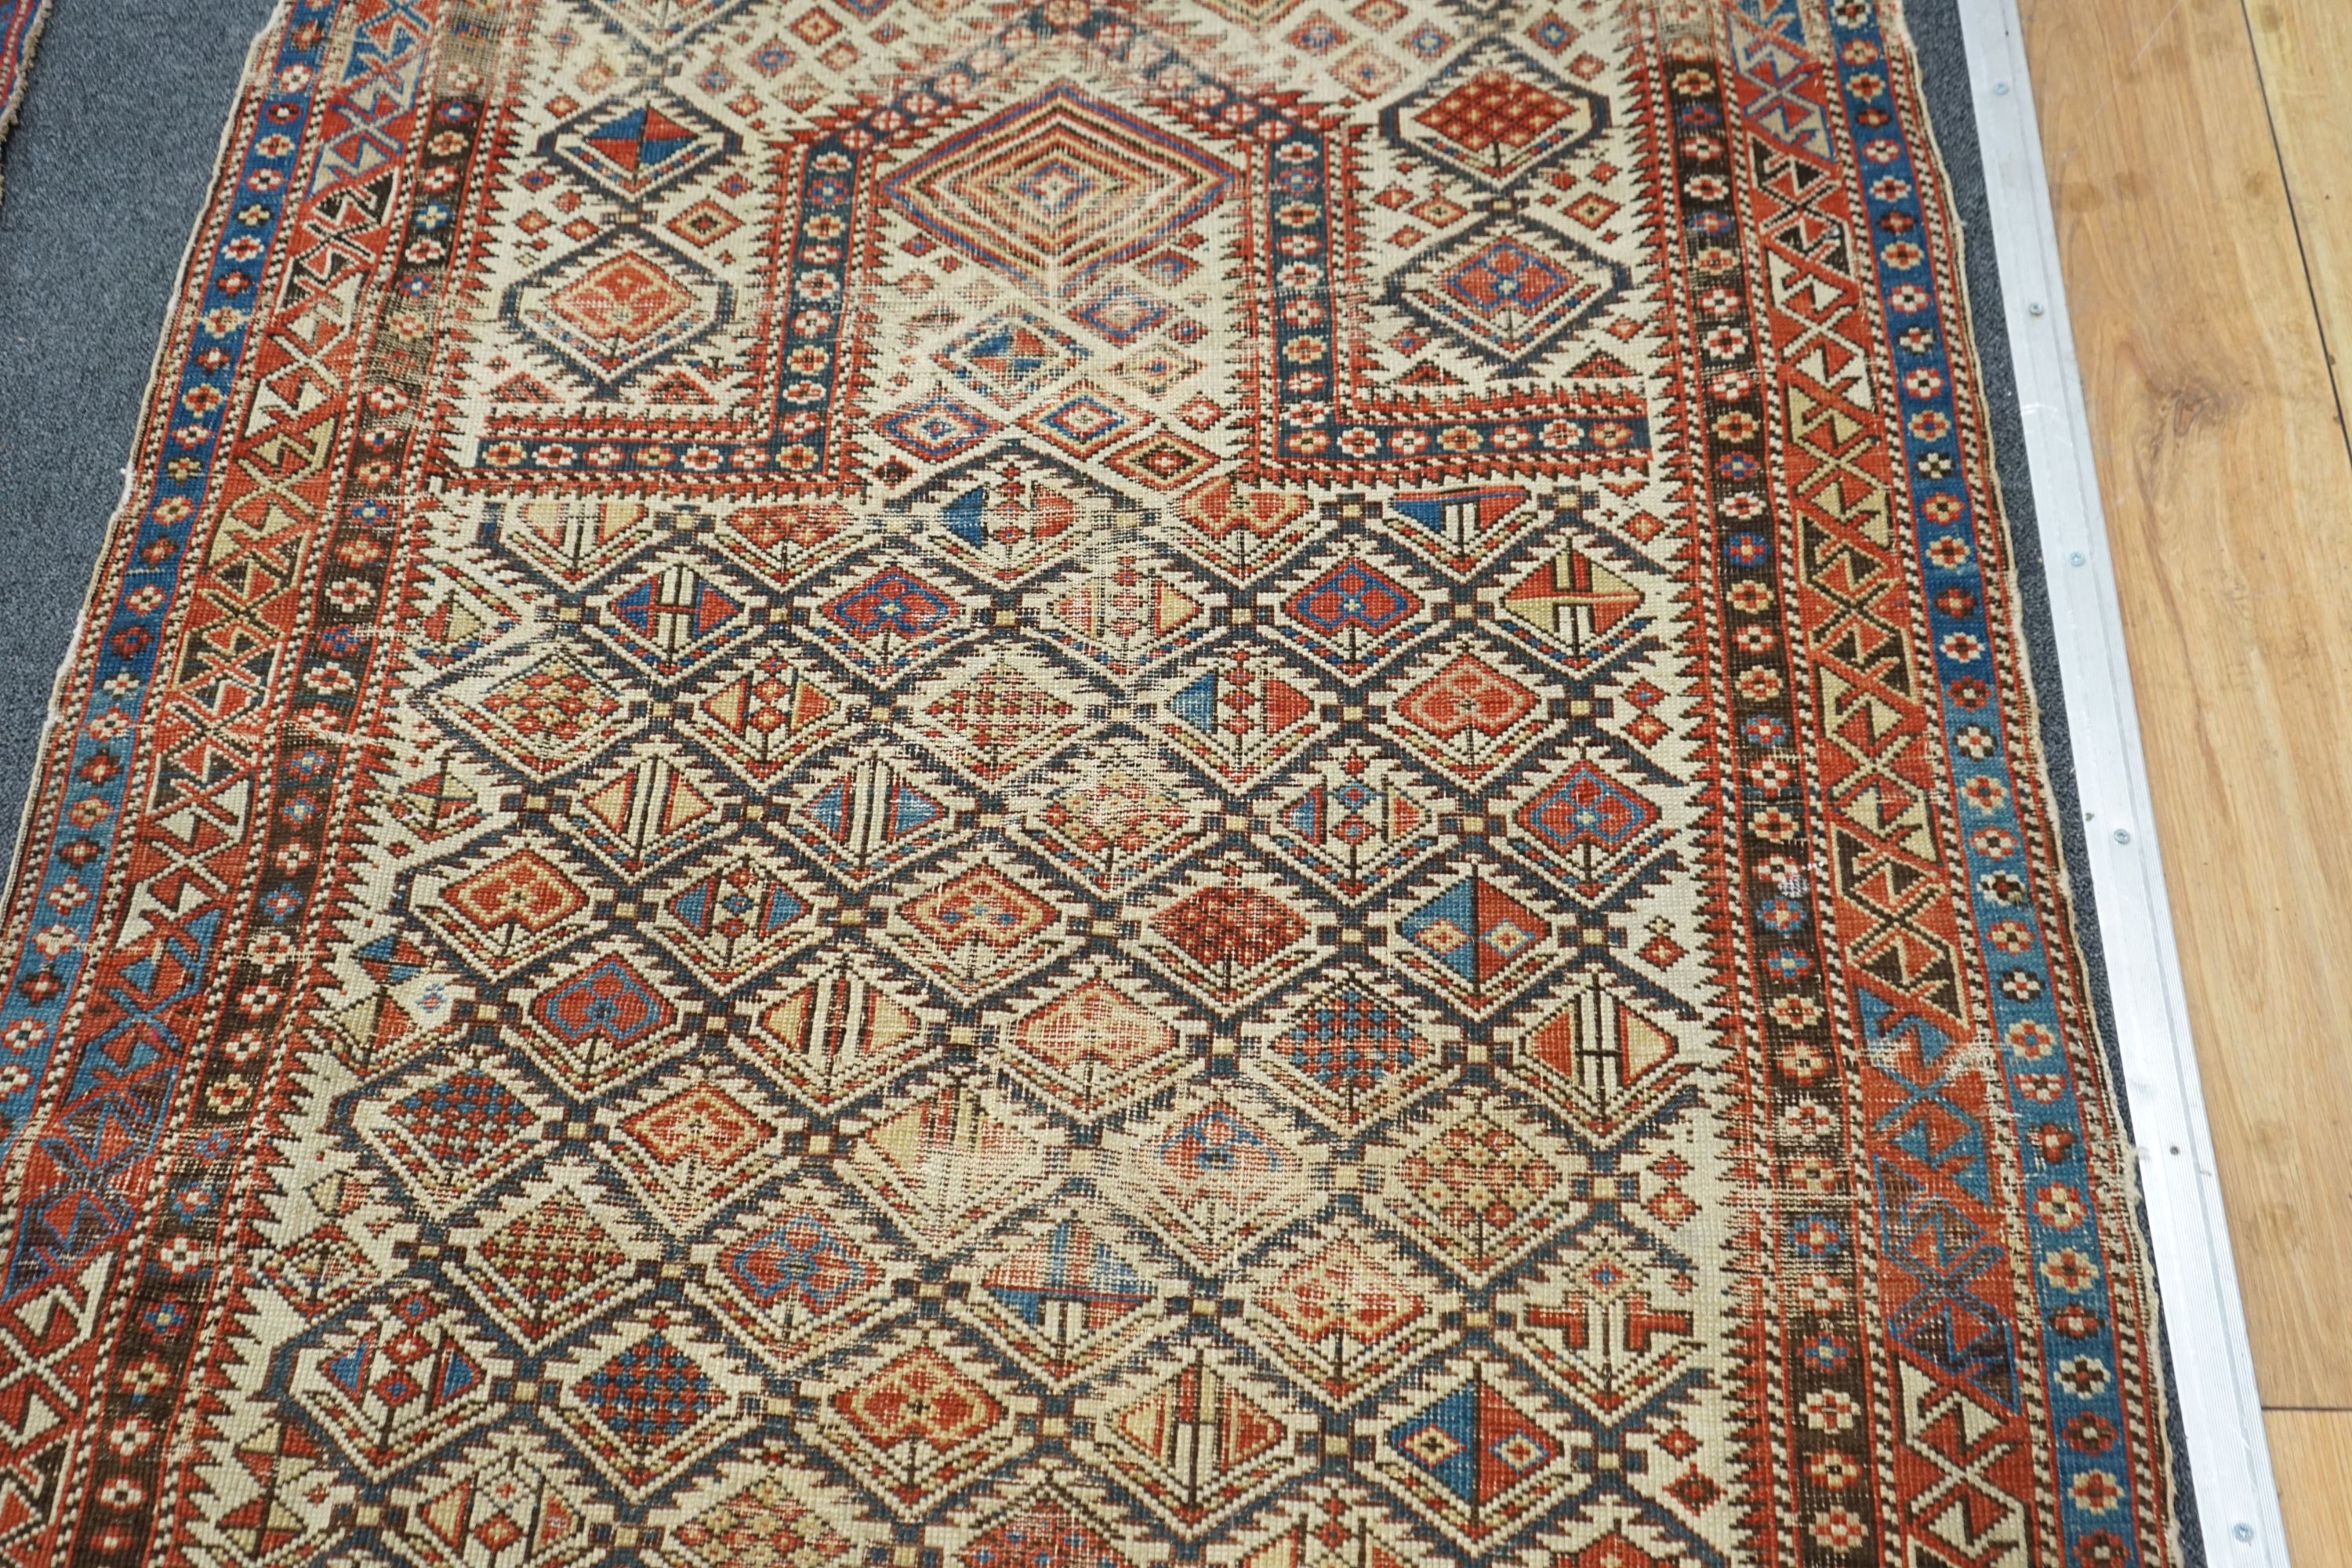 An antique Daghestan prayer rug, 144 x 101cm